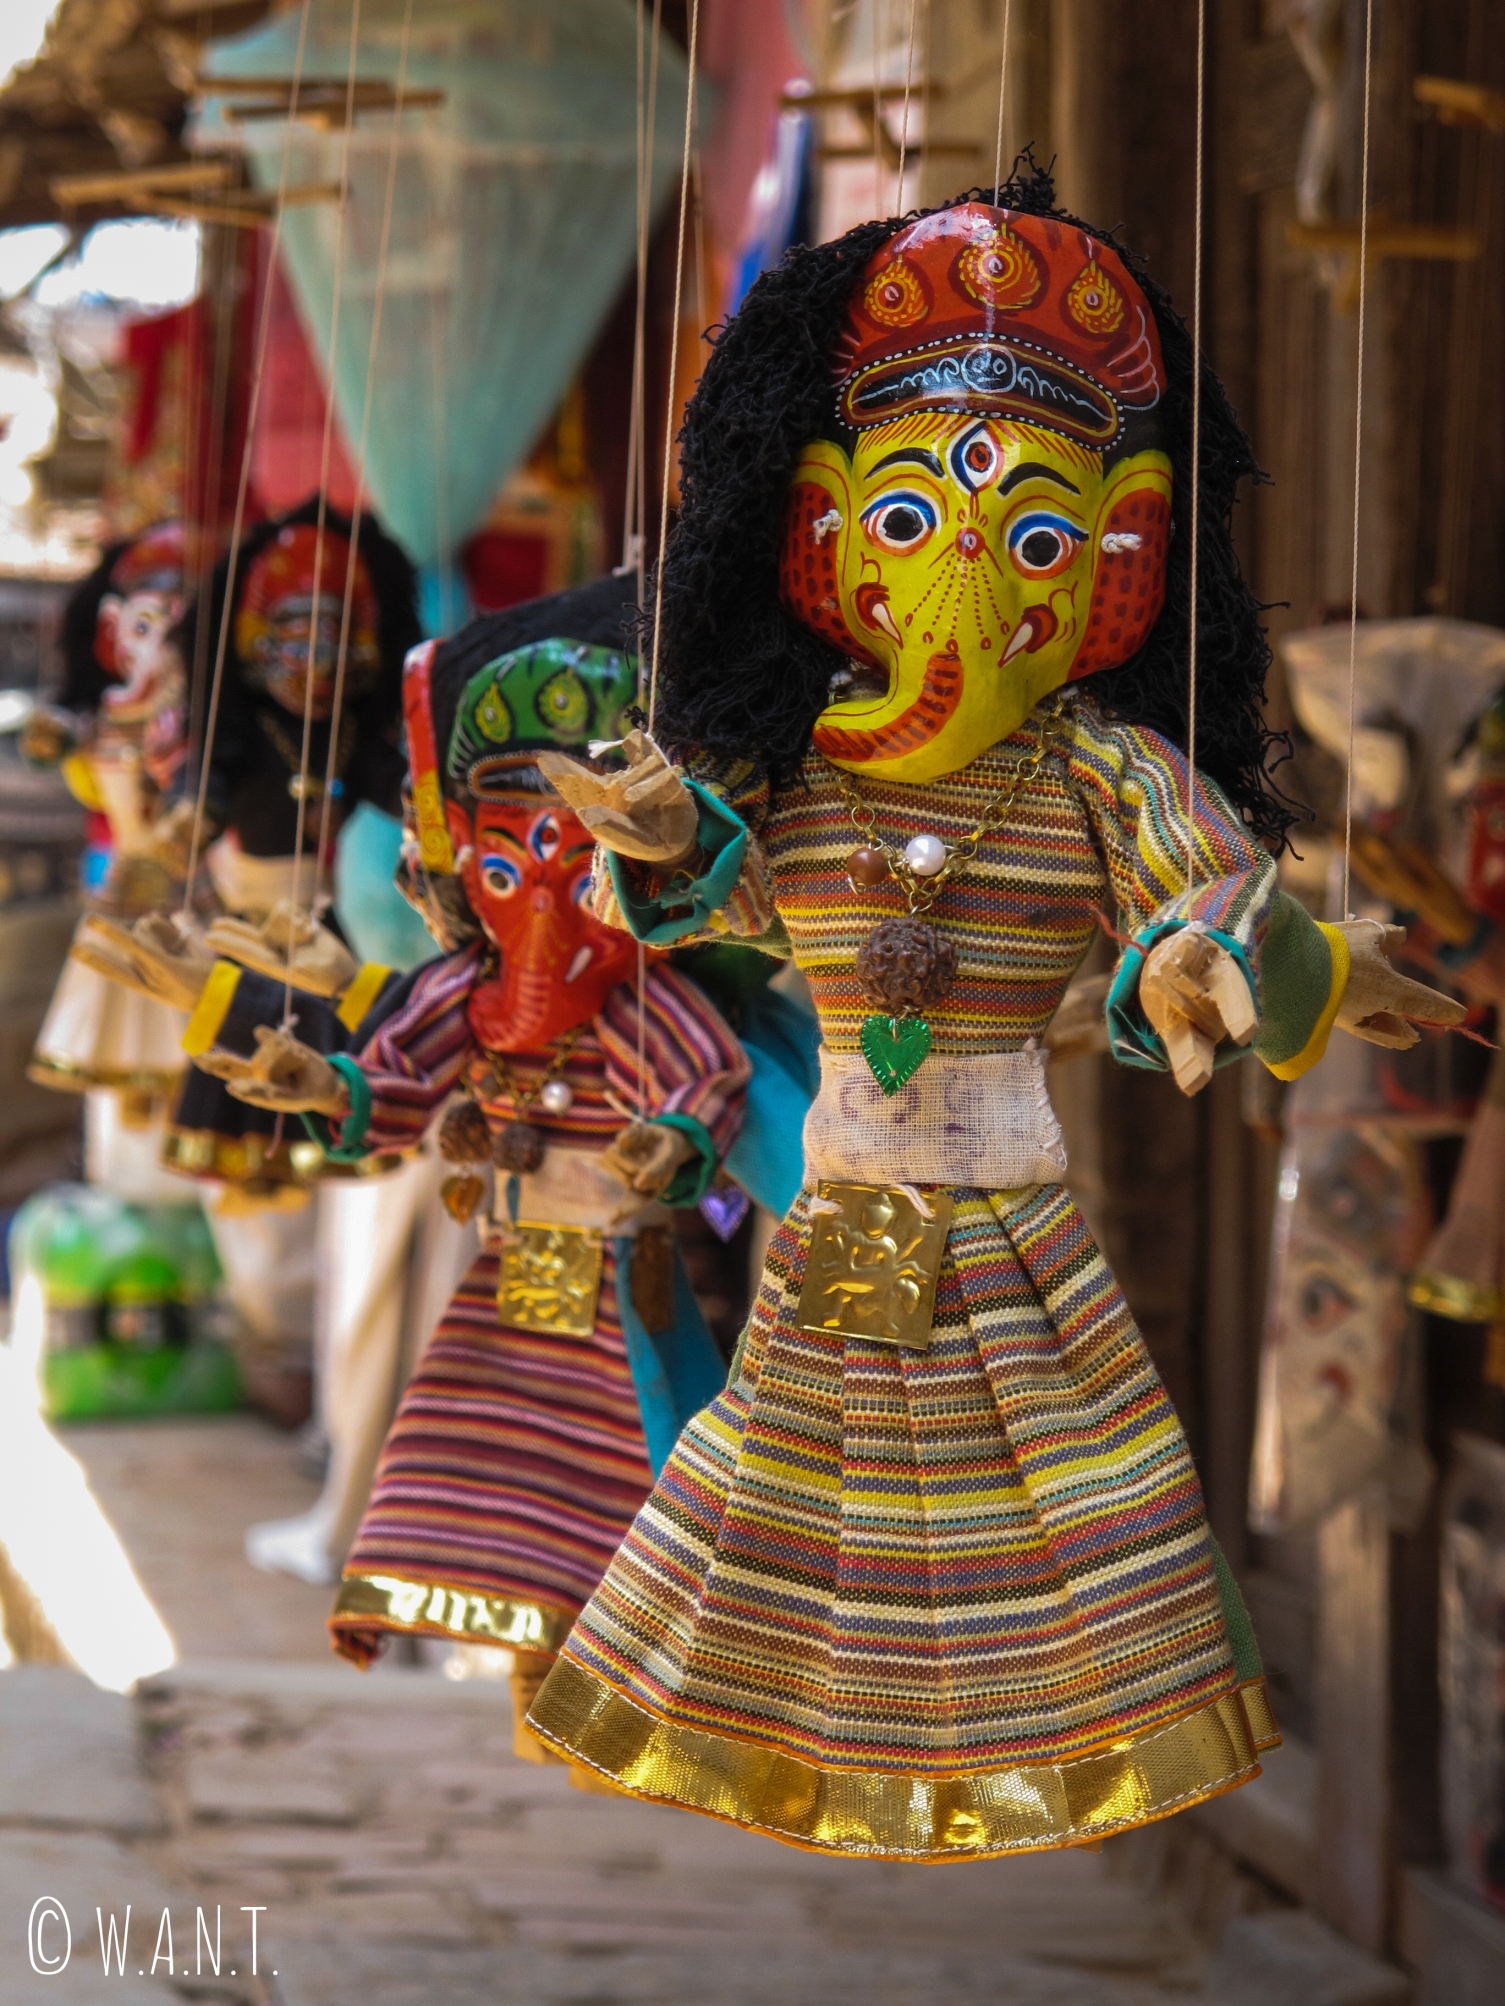 Marionnette double-face du dieu hindou Ganesh sur les échoppes de souvenirs de Bhaktapur